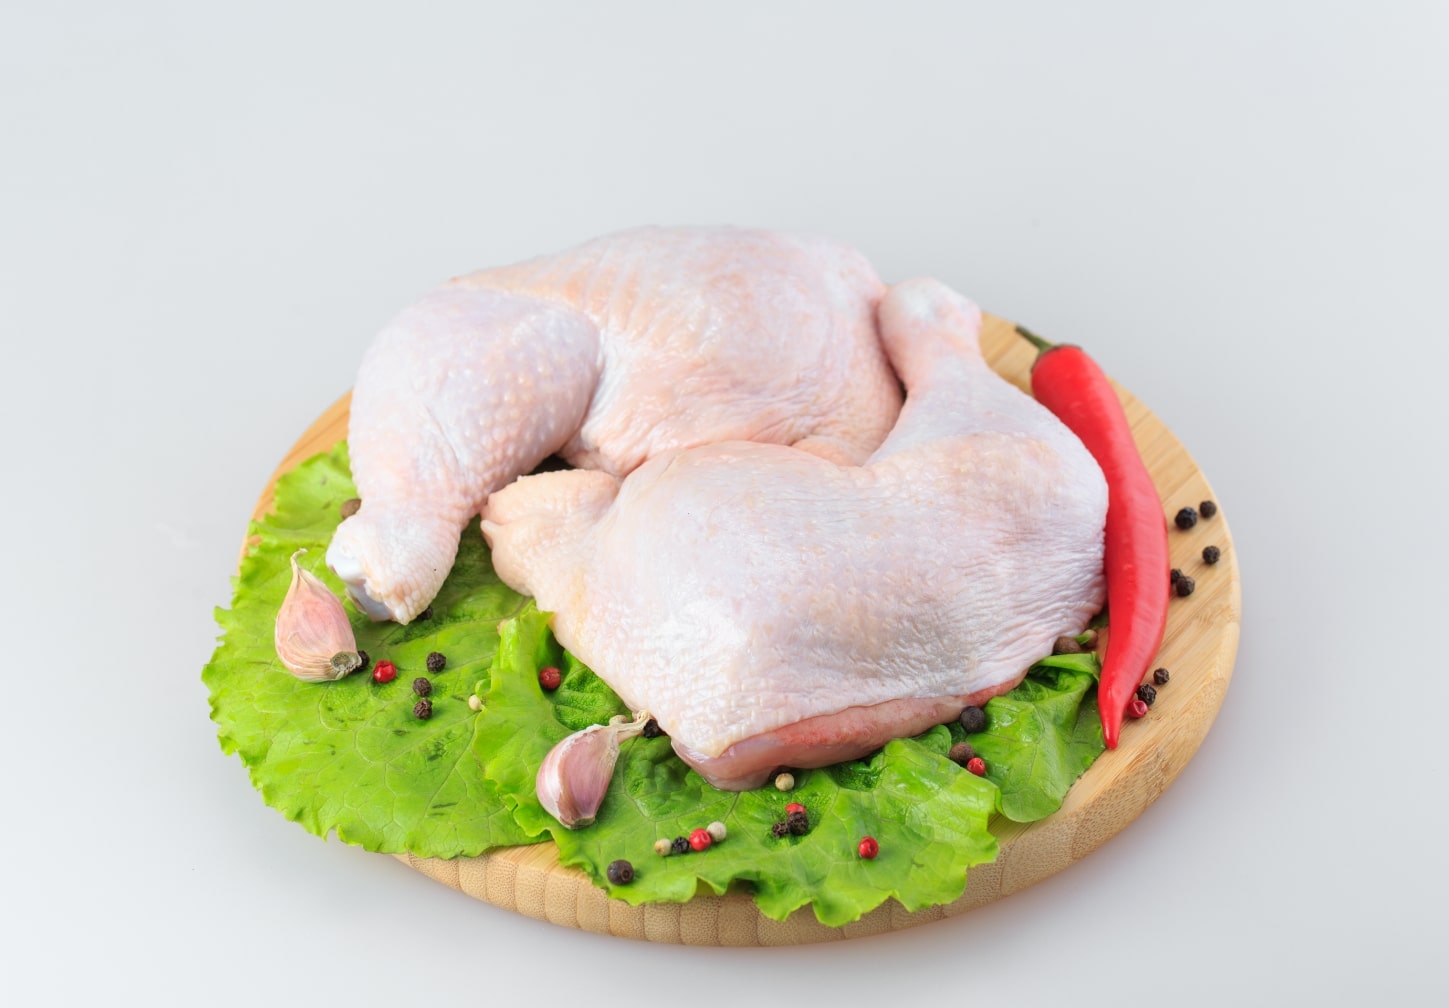 Tips On Keeping Chicken Tender